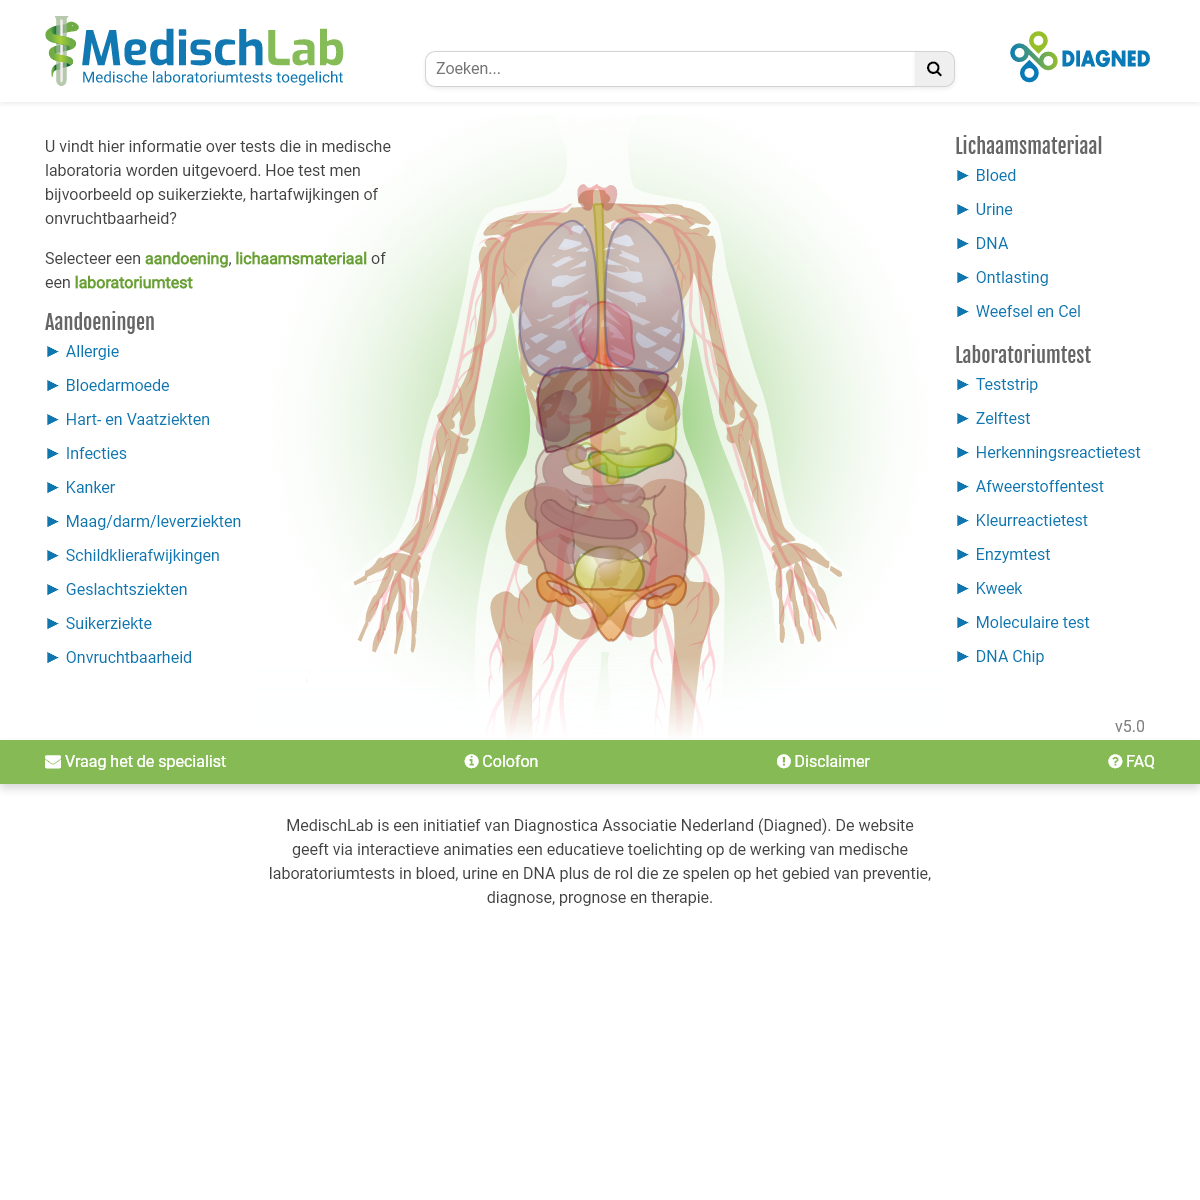 A complete backup of medischlab.nl